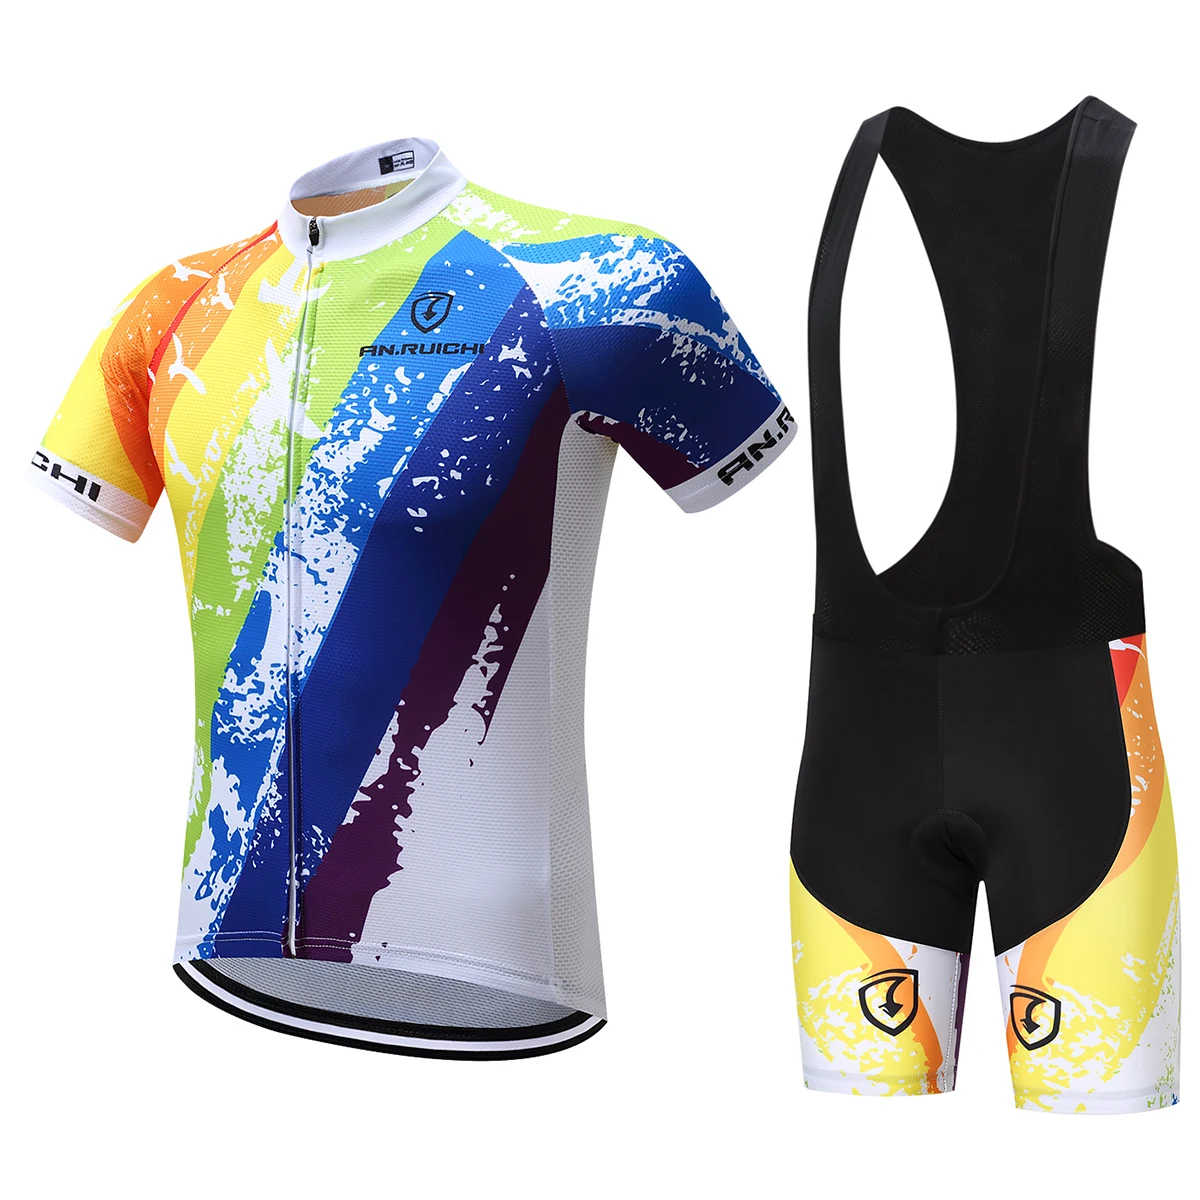 Мужская футболка с коротким рукавом для велоспорта, многоцветная профессиональная команда, набор для велоспорта Go Pro, одежда для велоспорта, одежда для триатлона - Цвет: Bib cycling set